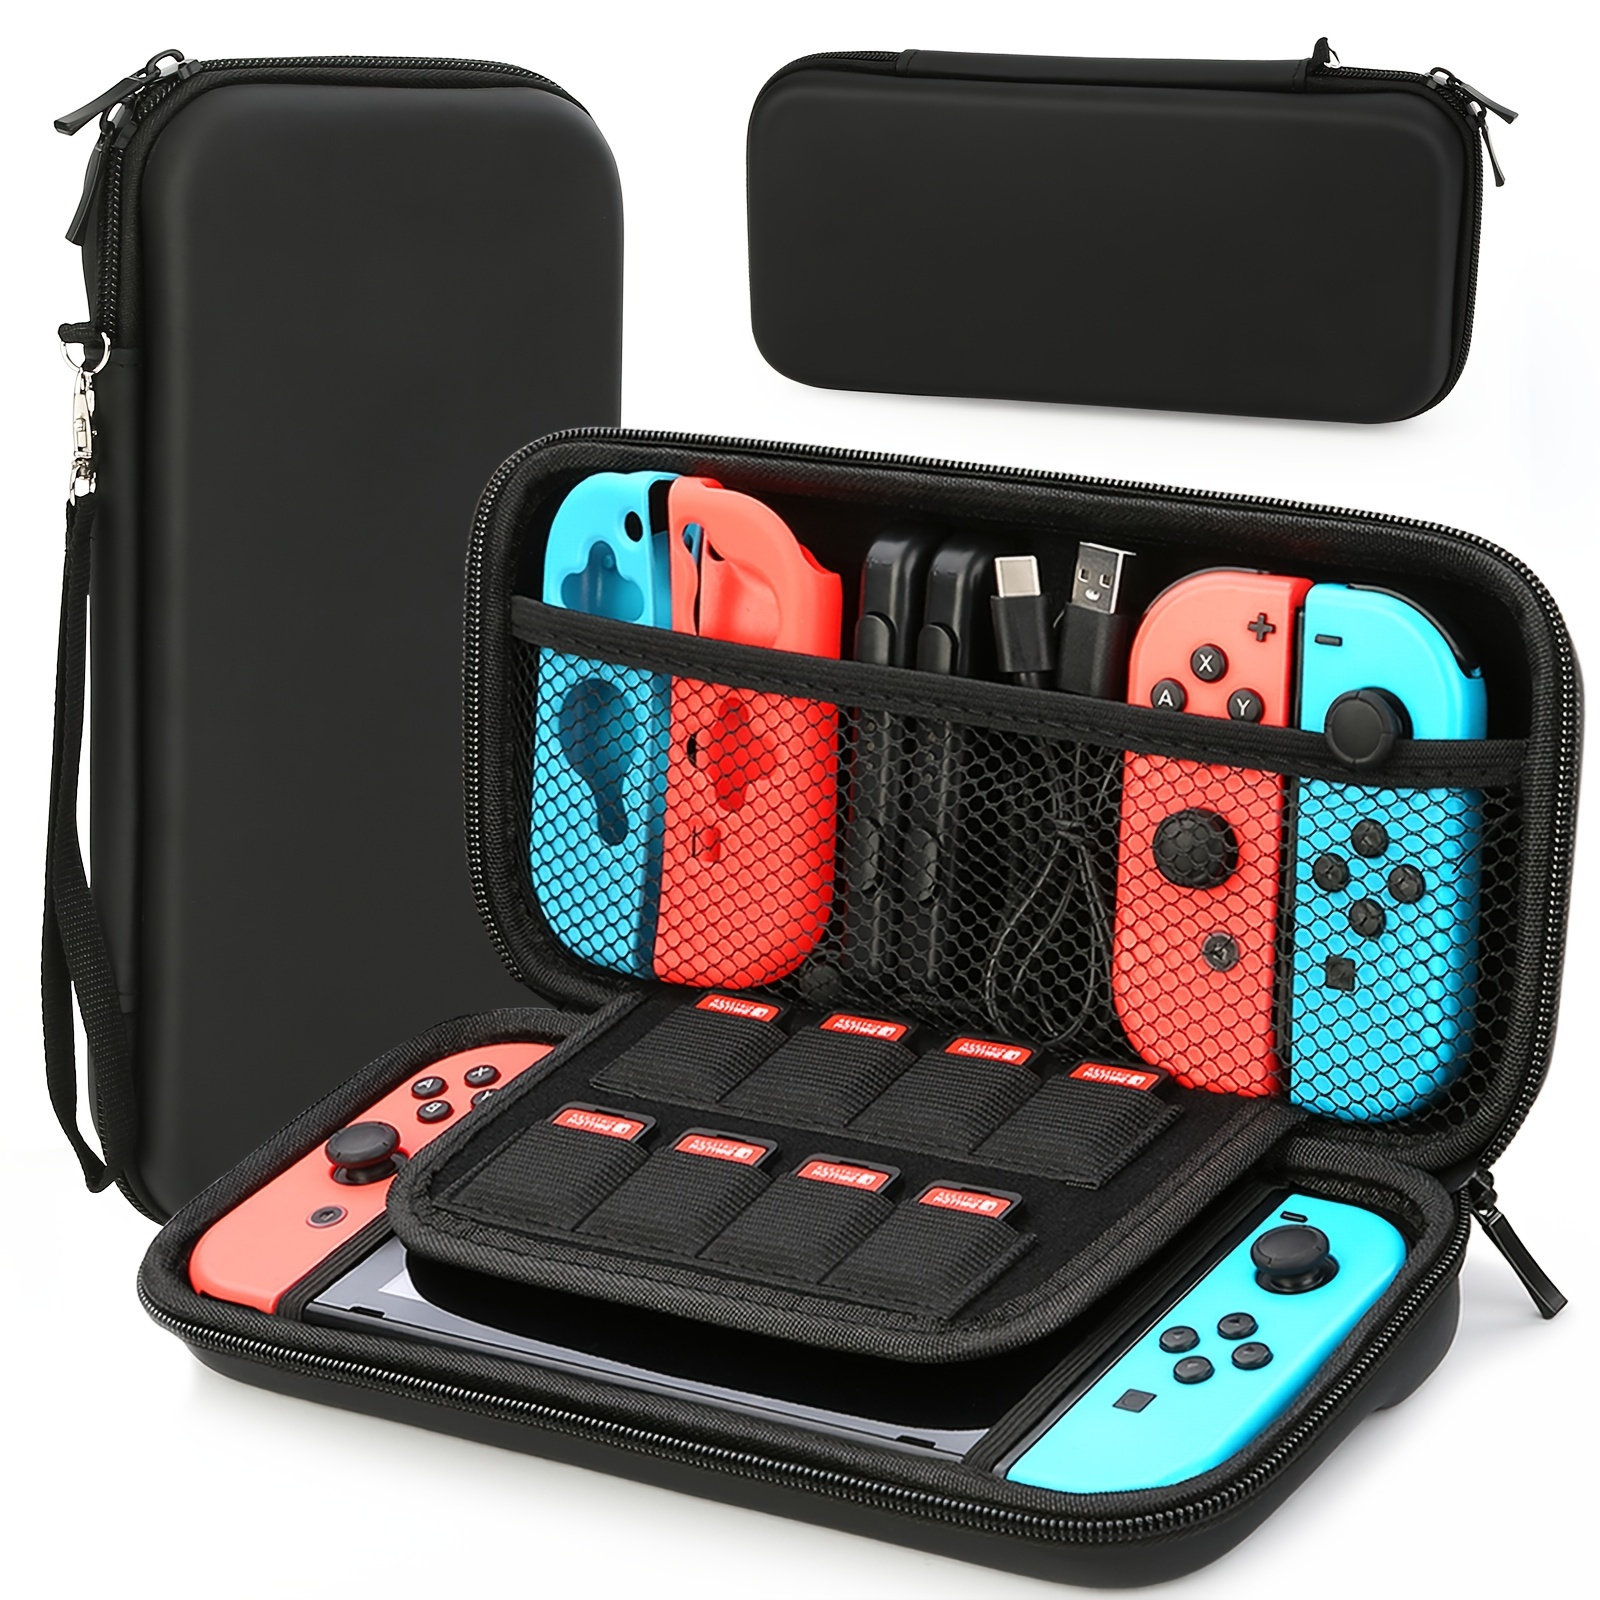 

Étui de protection rigide portable pour Nintendo Switch & modèle OLED pour transporter et protéger la console Nintendo Switch